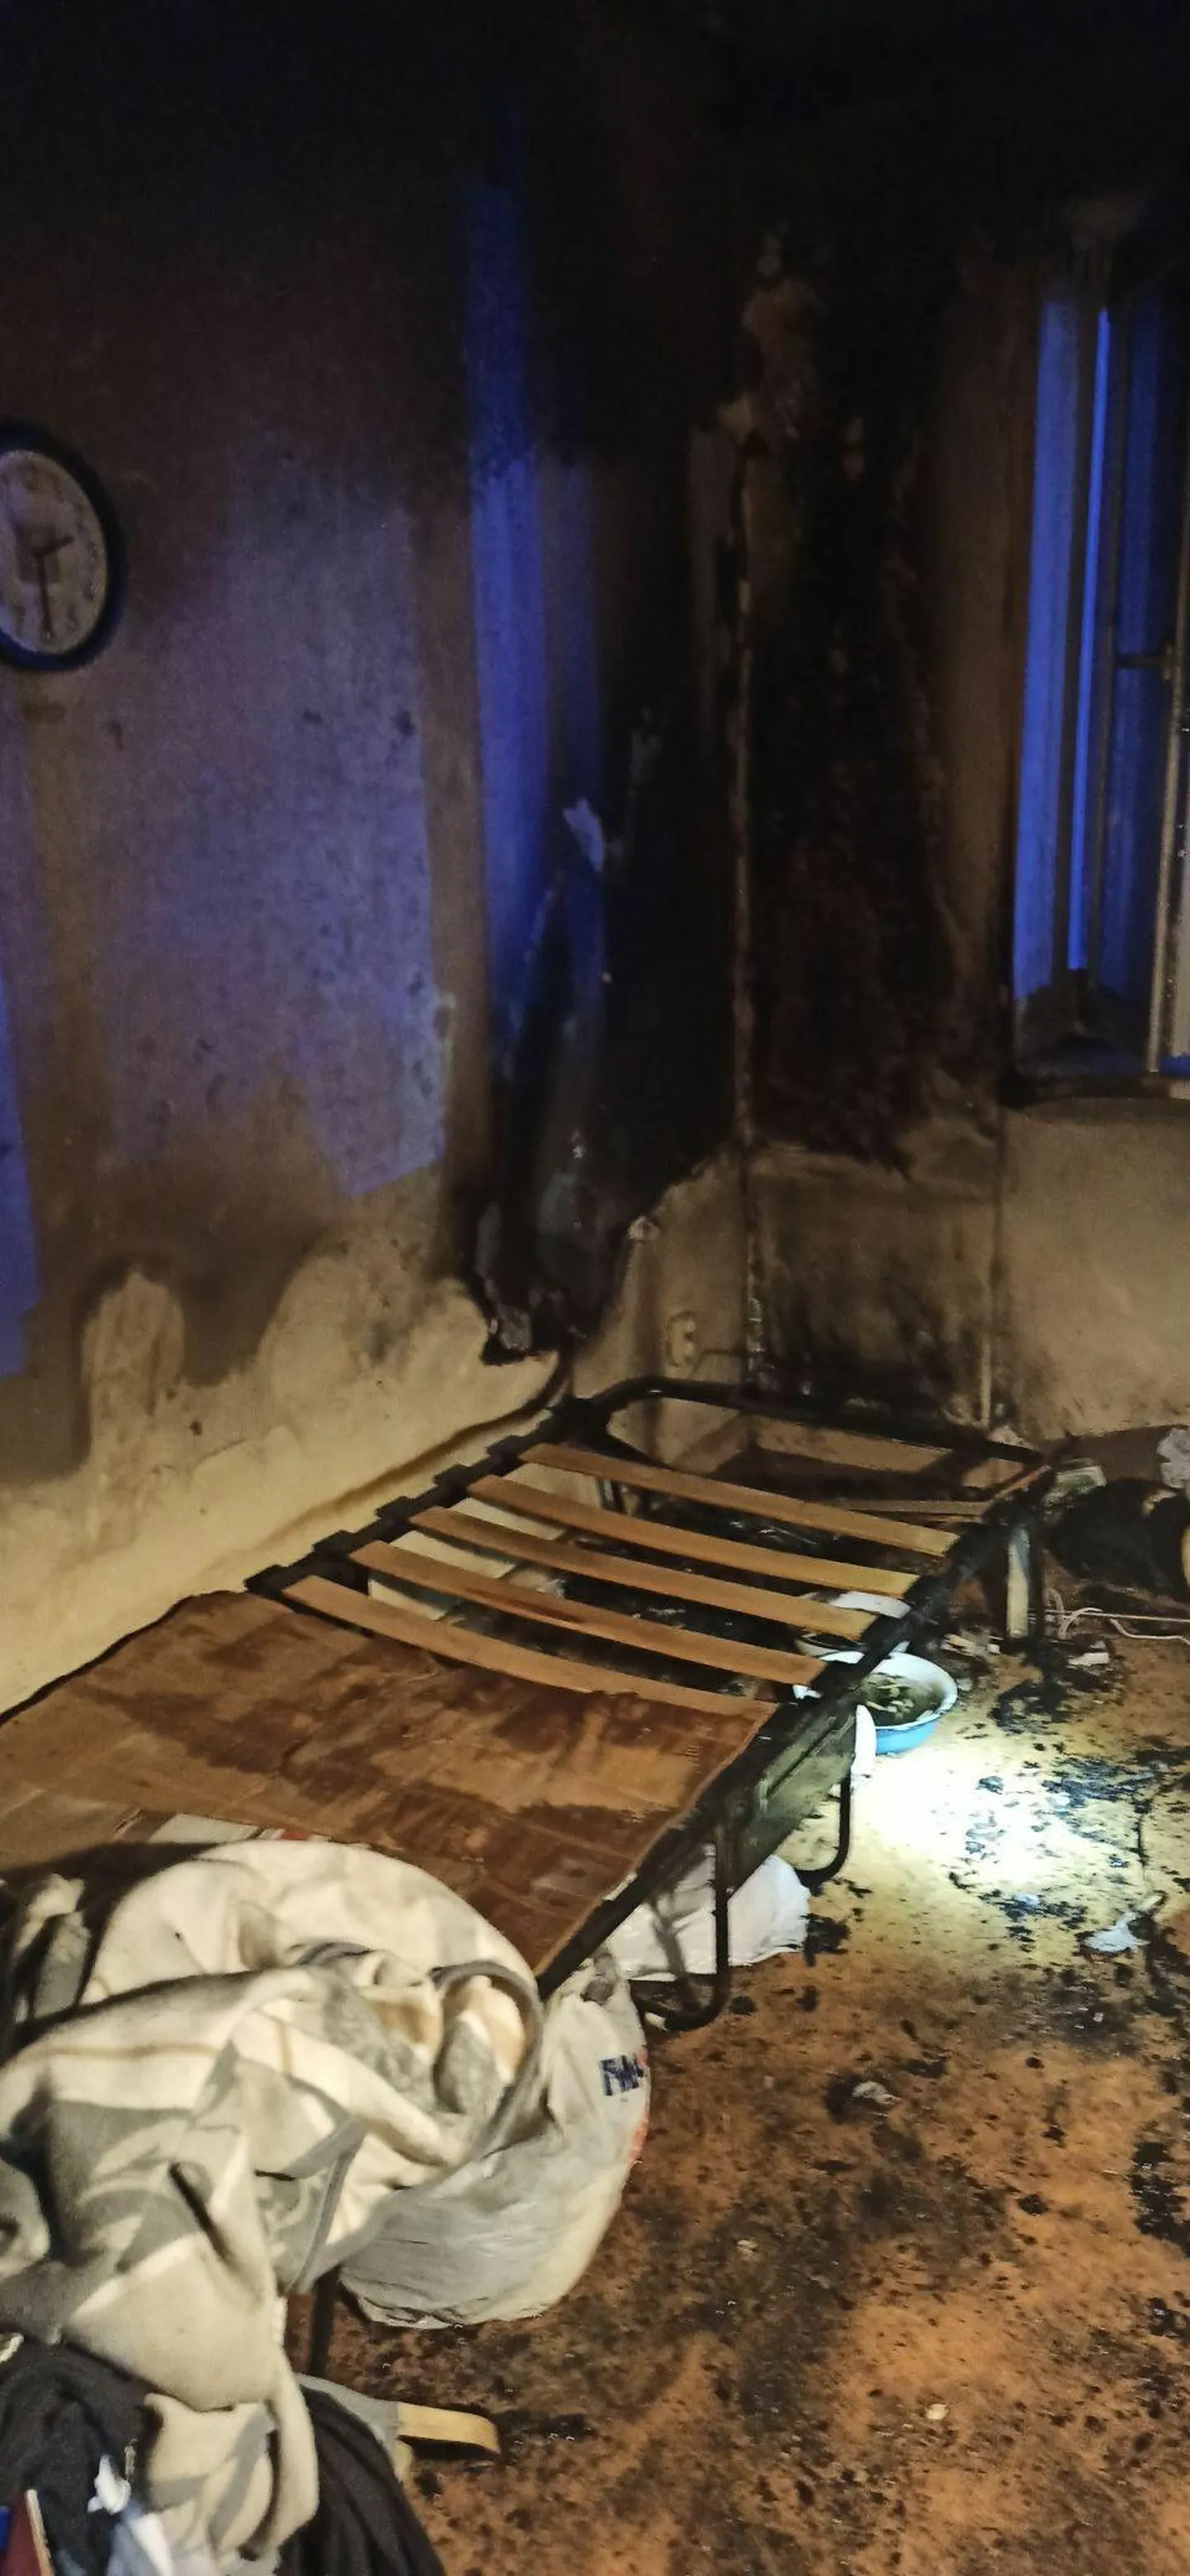 Спасатели вынесли человека из горящего помещения на улице Мальми.